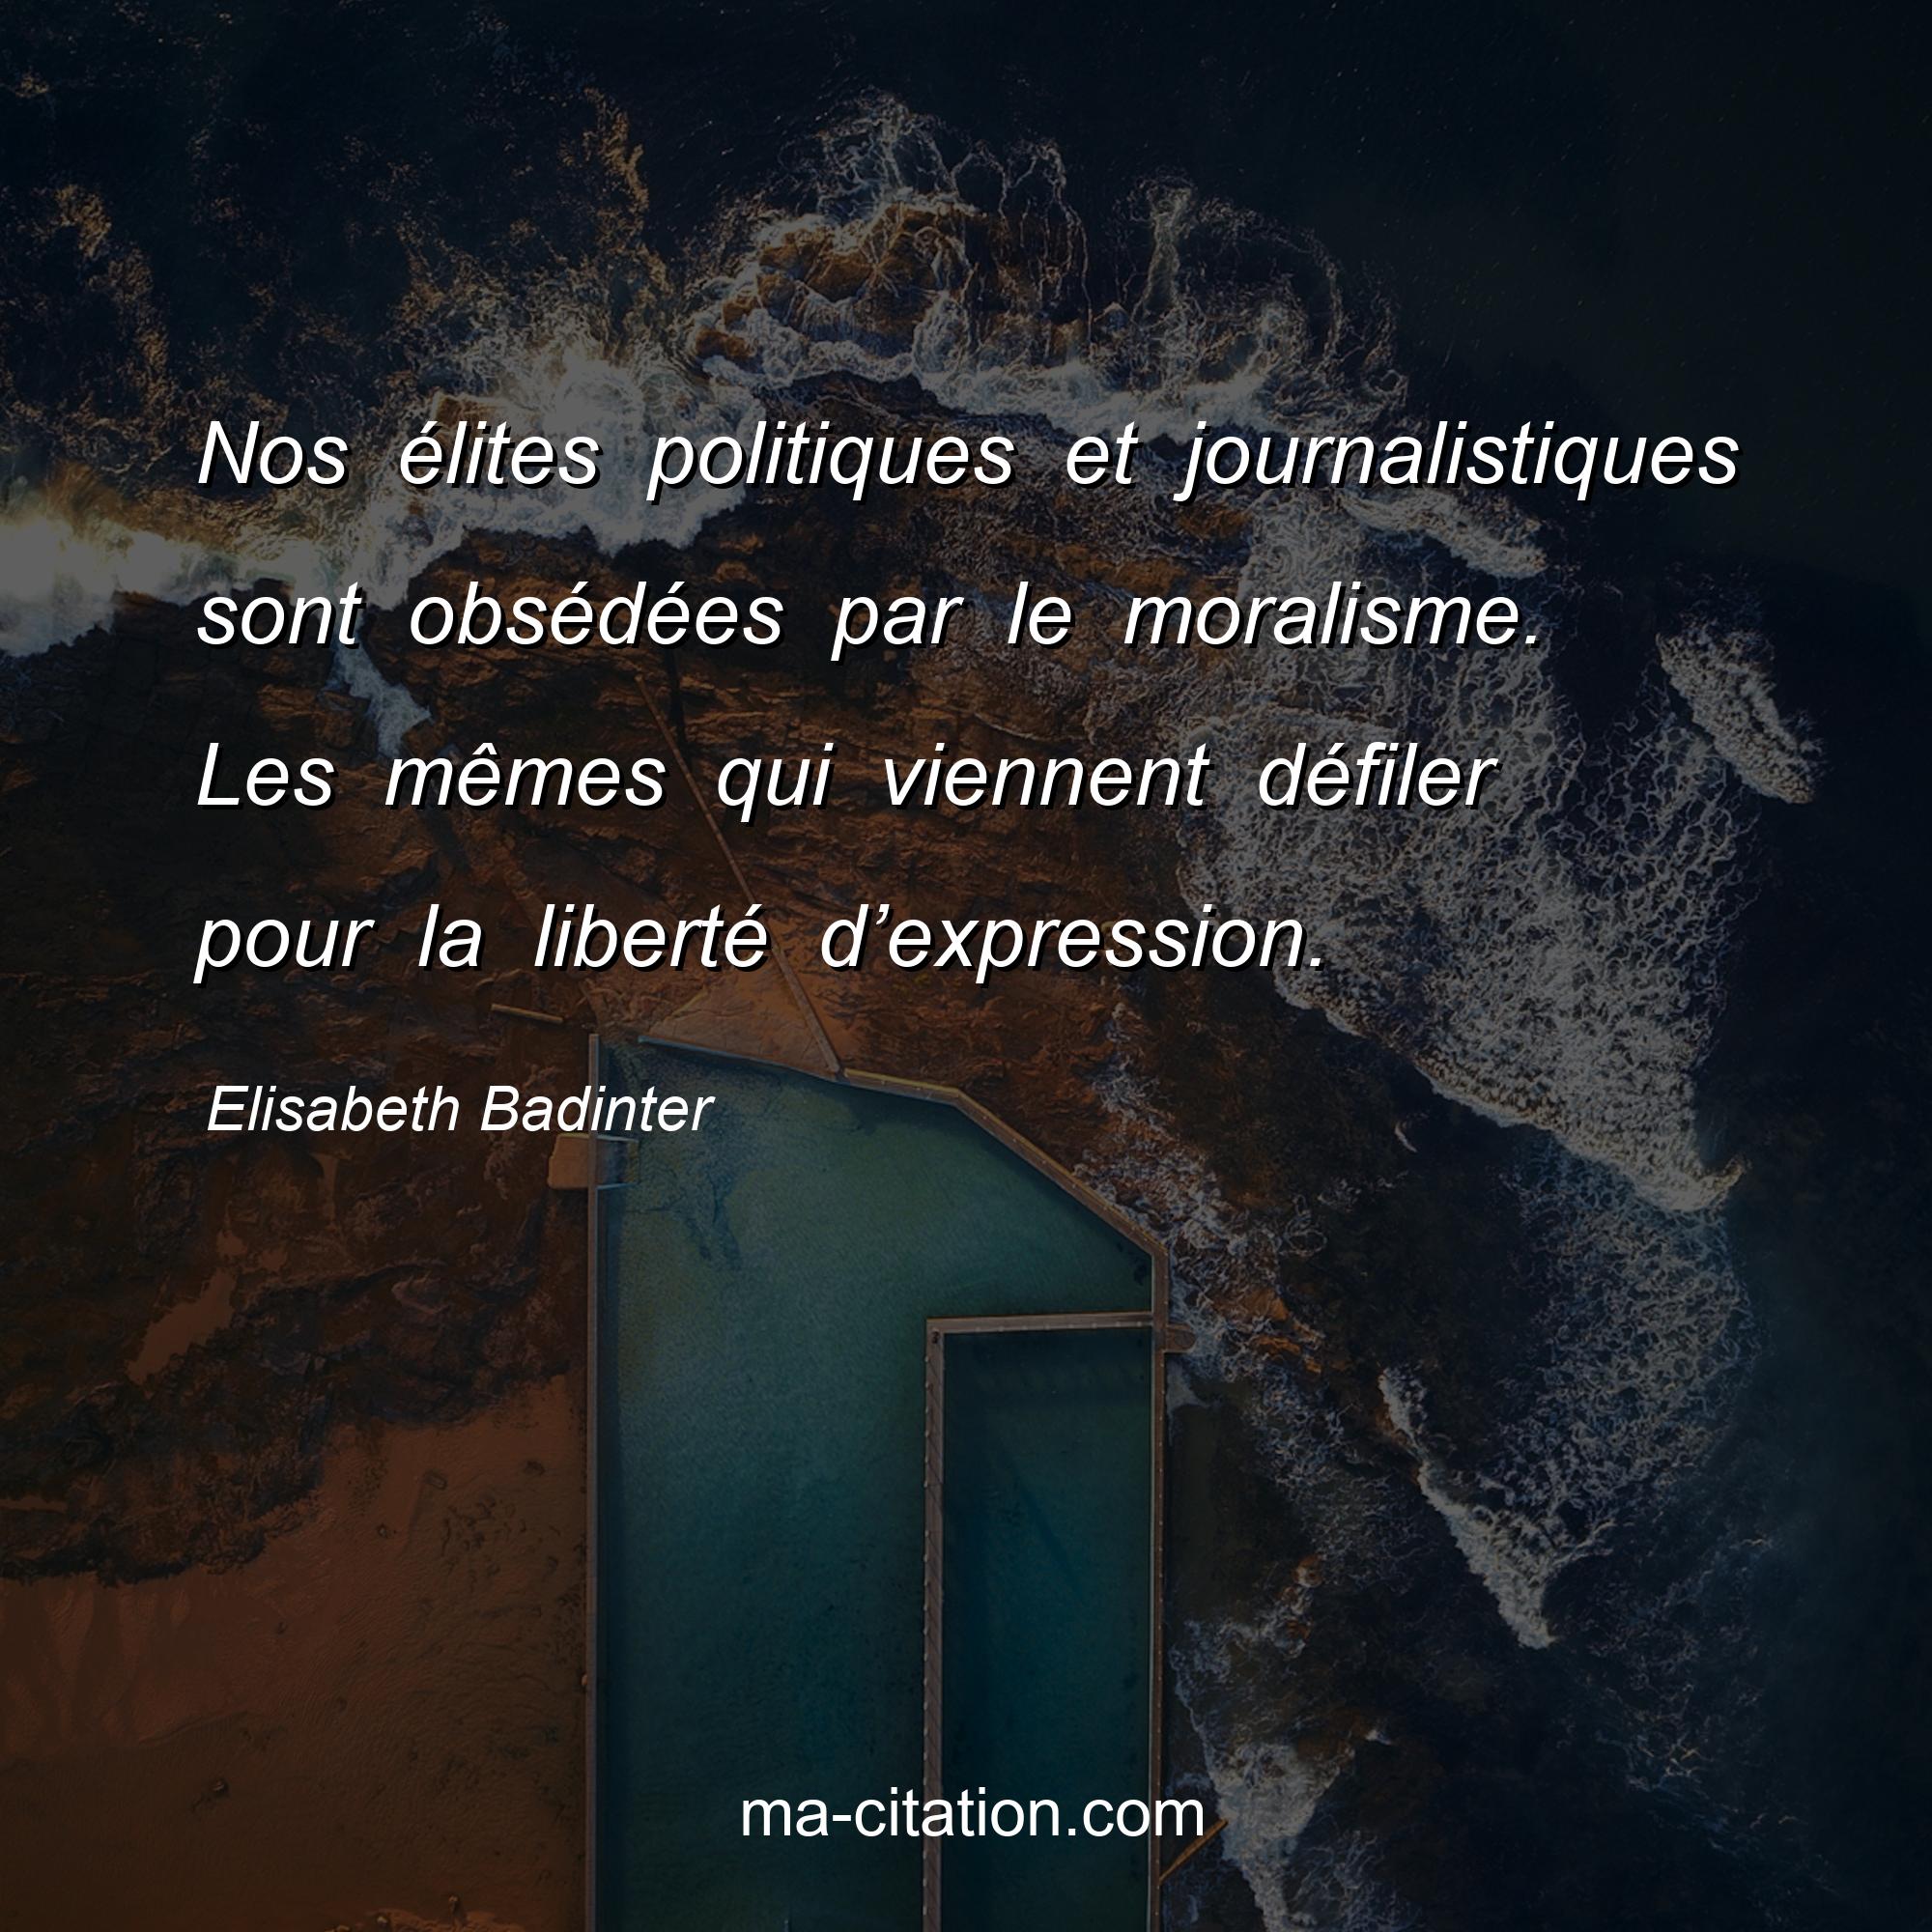 Elisabeth Badinter : Nos élites politiques et journalistiques sont obsédées par le moralisme. Les mêmes qui viennent défiler pour la liberté d’expression.